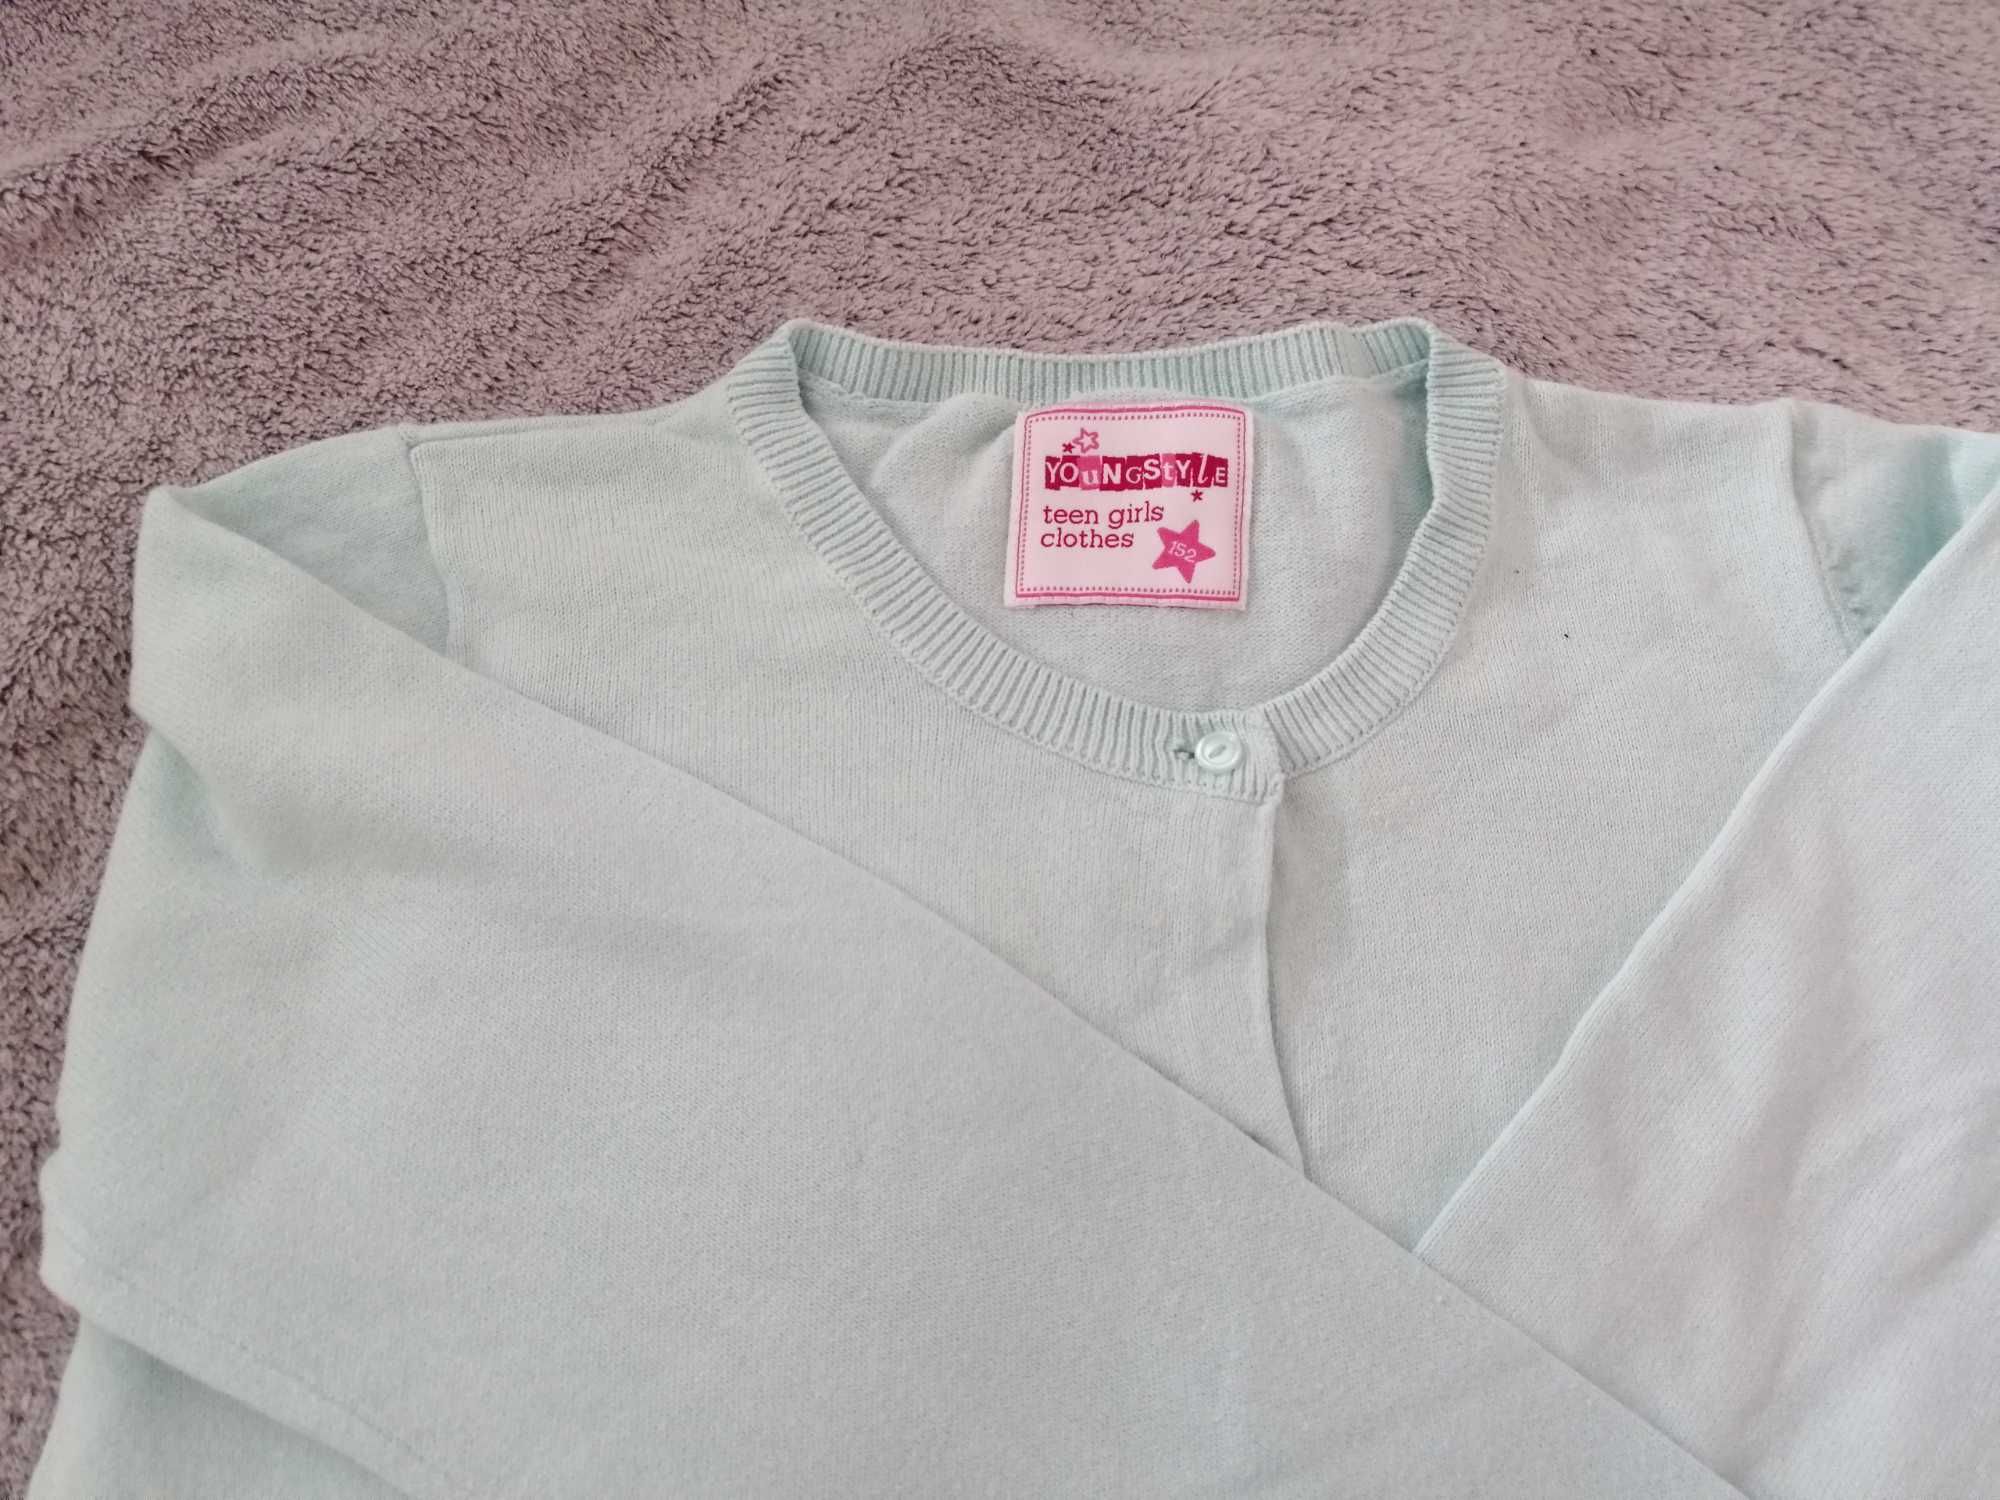 Sweterek miętowy rozpinany i bluzka z cekinami r. 152